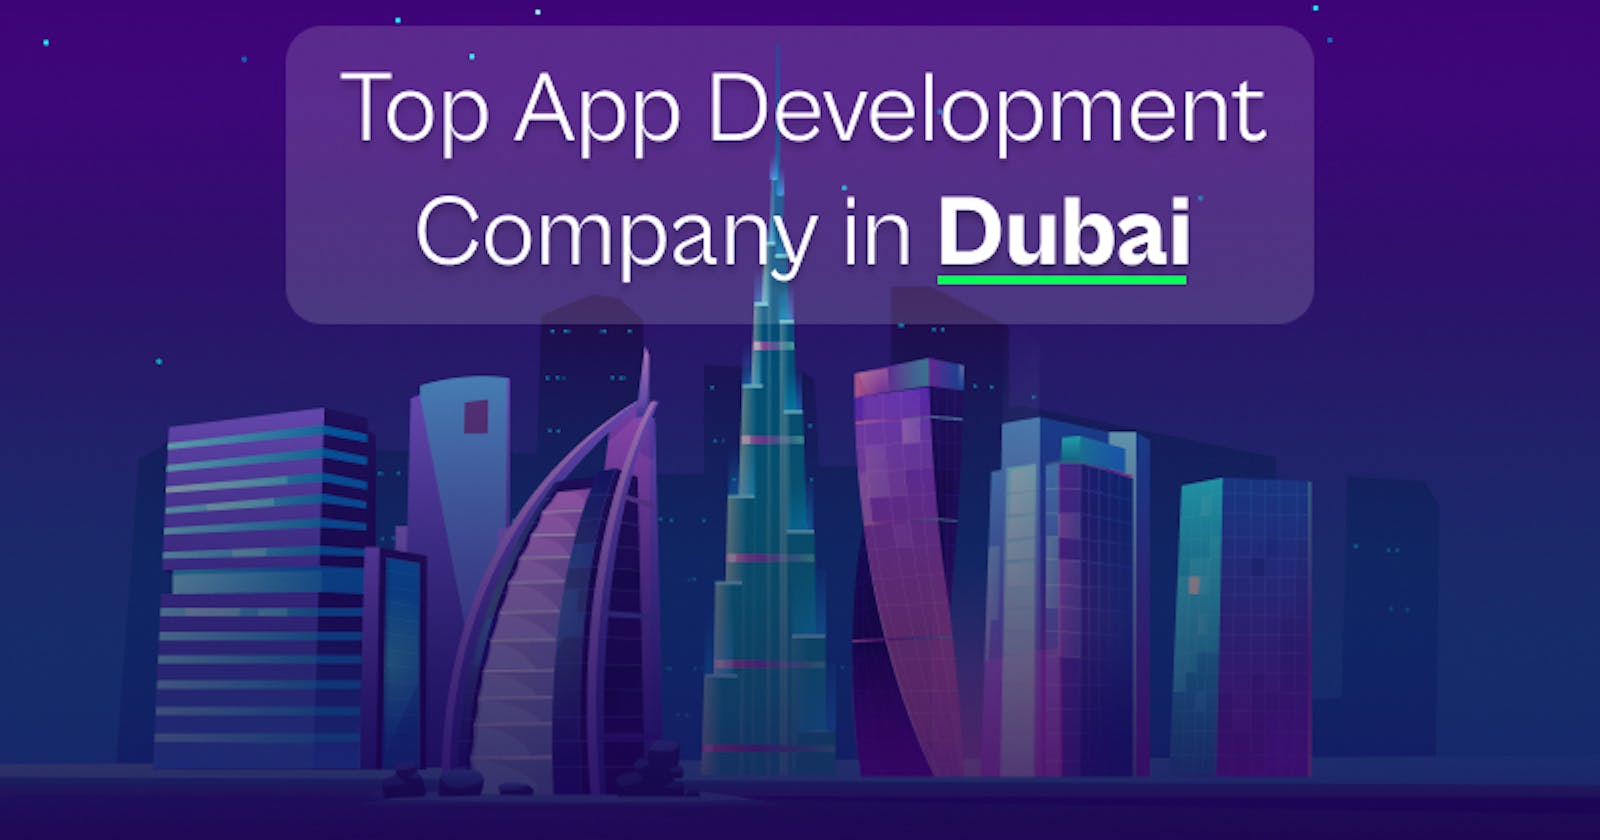 Top App Development Company in Dubai